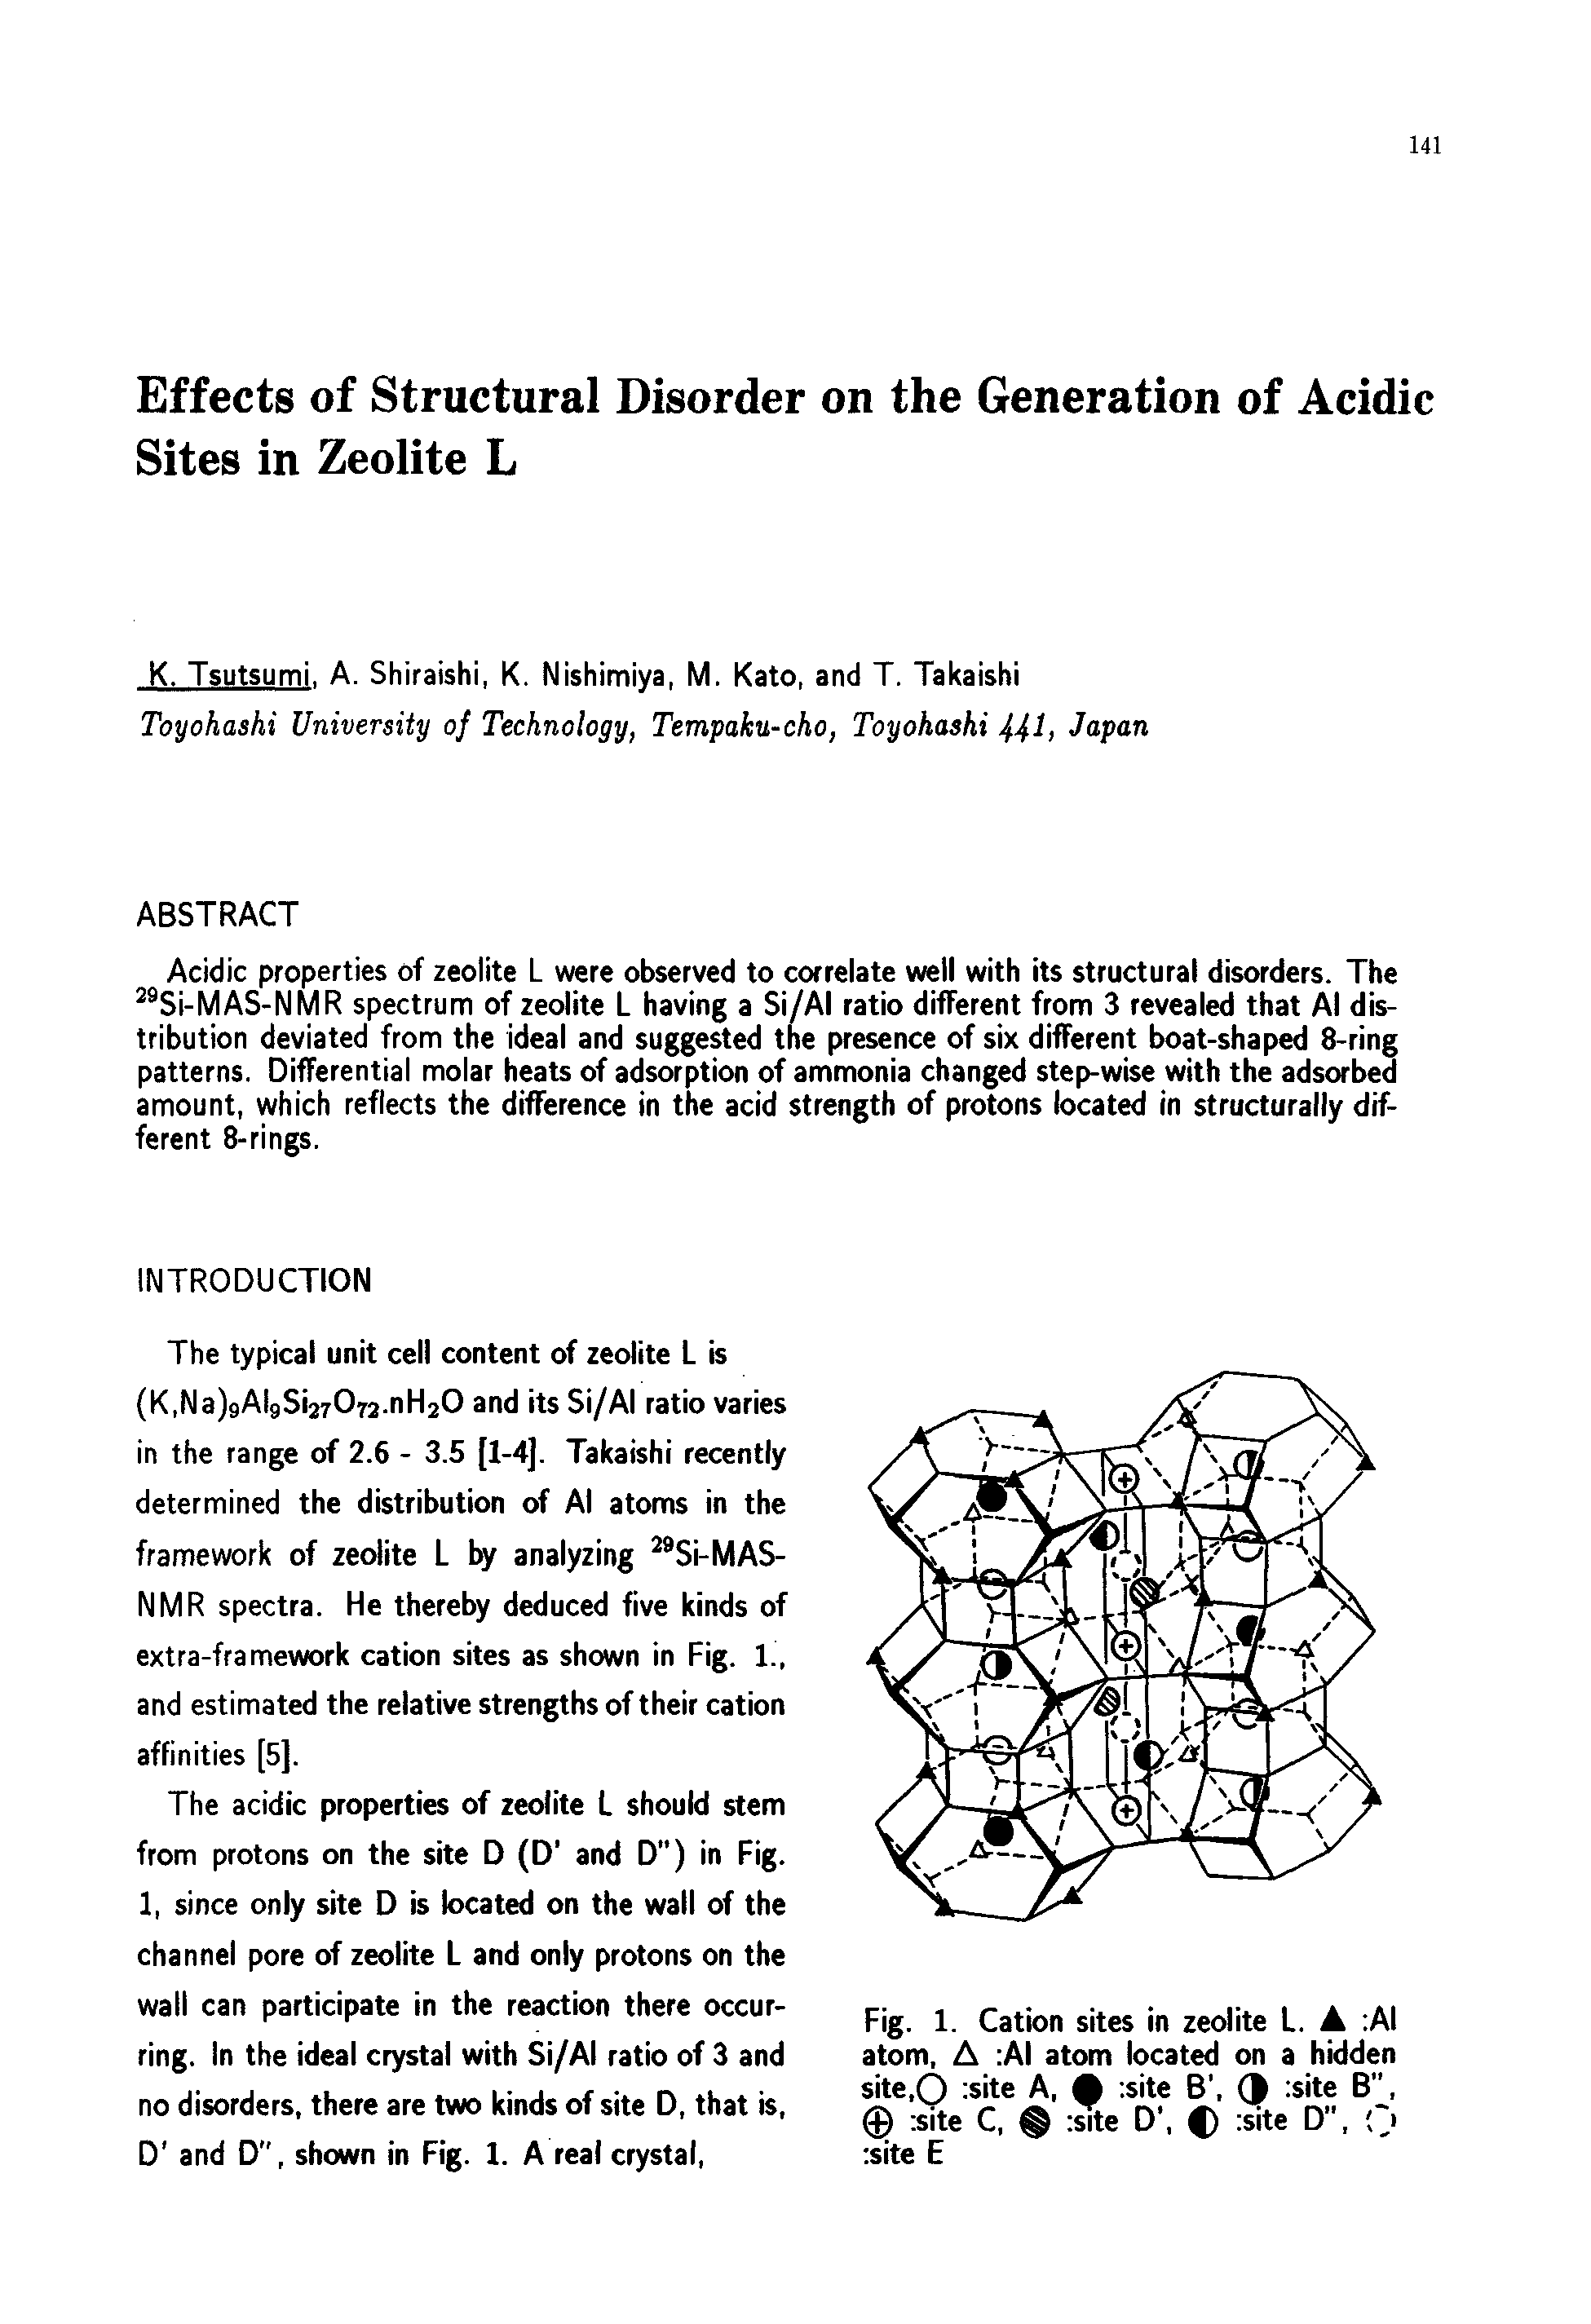 Fig. 1. Cation sites in zeolite L. A AI atom, A AI atom located on a hidden site,0 site A,. site 6, (f site B", 0 site C, site D, 0 site D , site E...